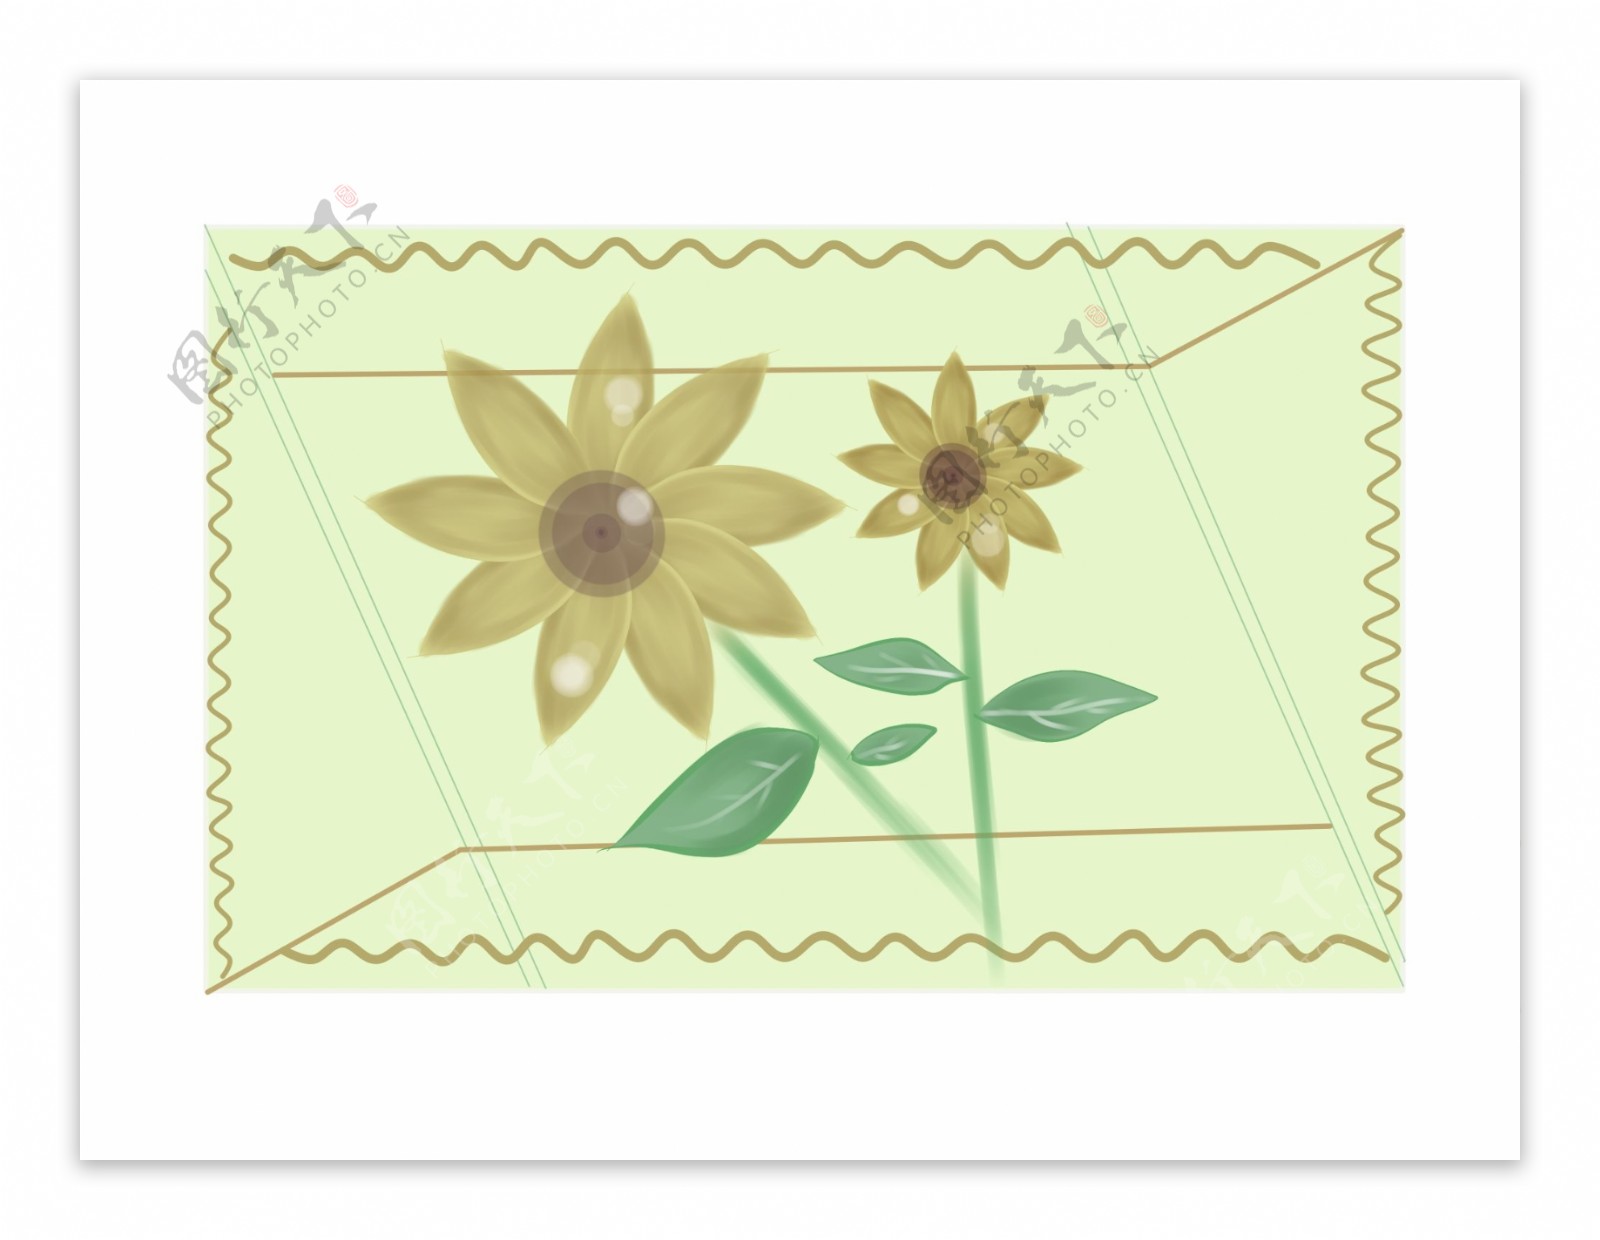 漂亮花朵卡通邮票